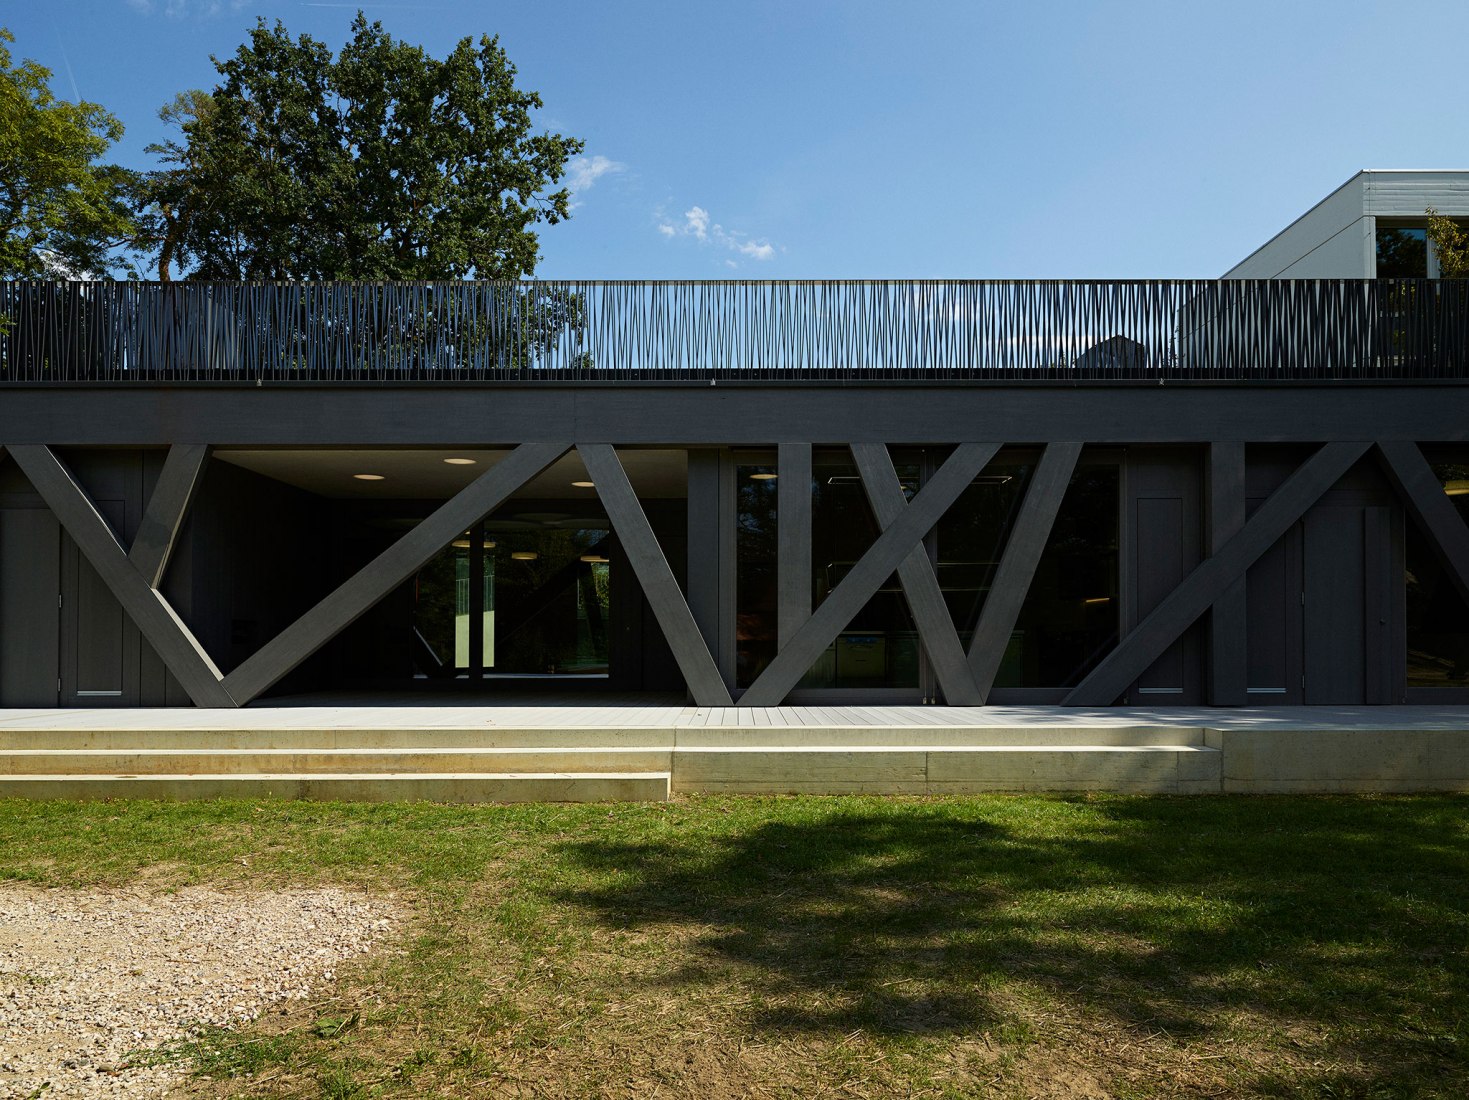 Centro Recreativo Comunitario Le Lignon por Stendardo Menningen Architectes. Fotografía por Federal Studio